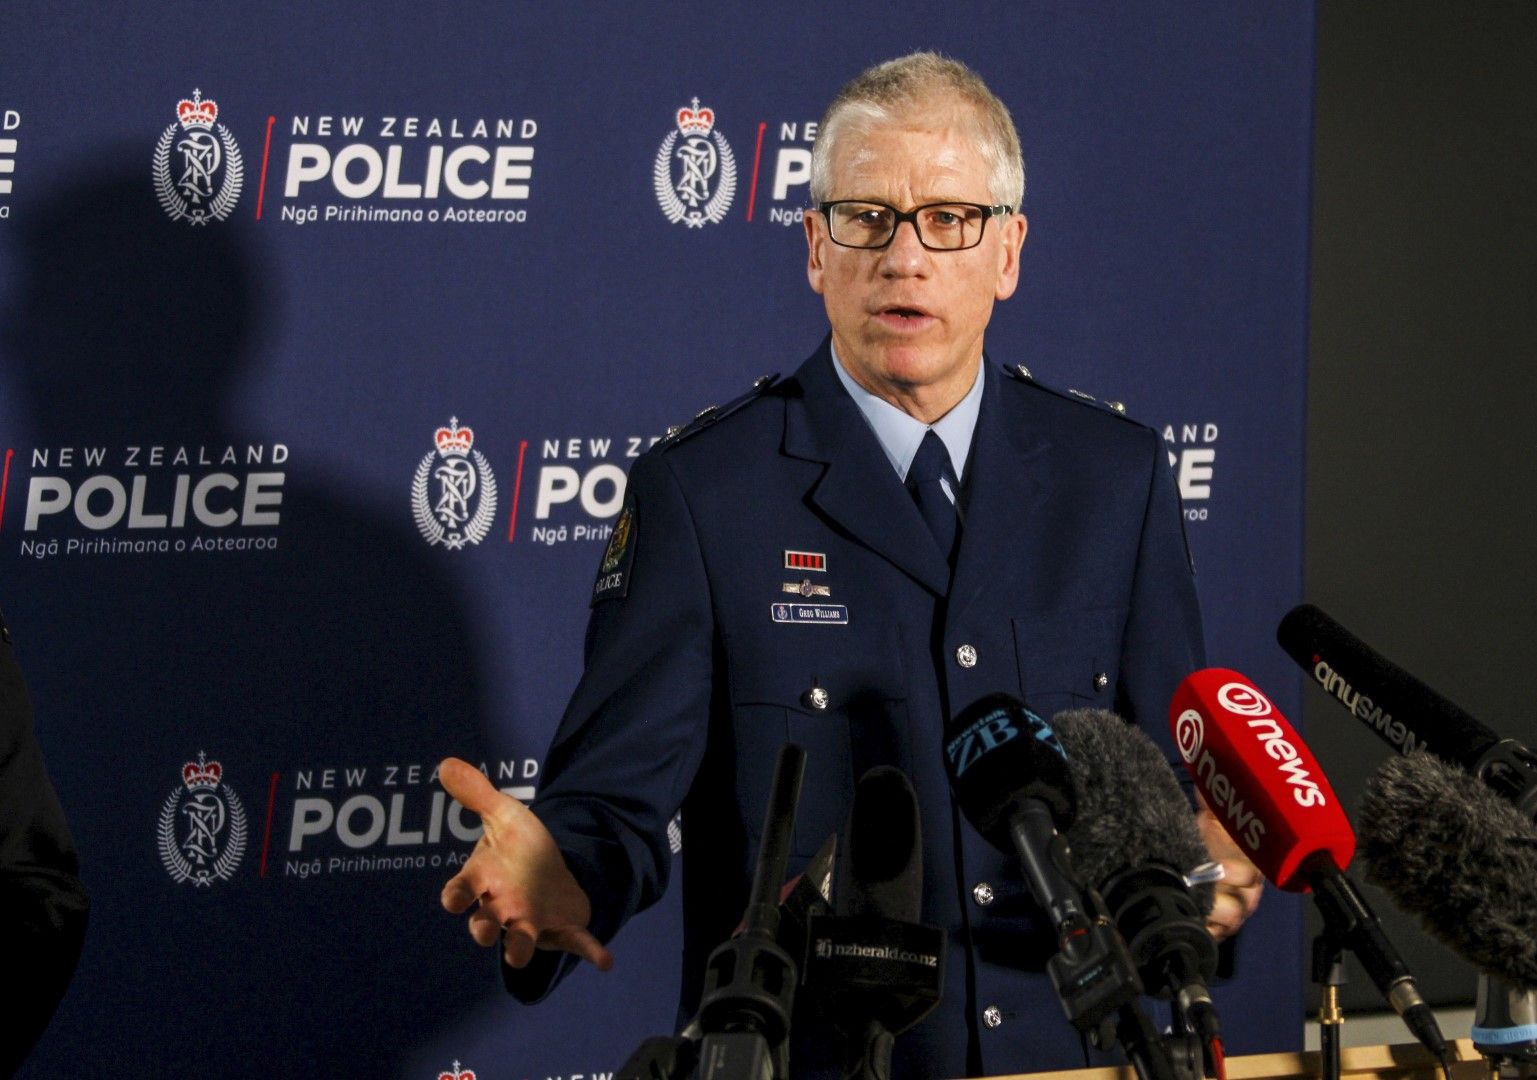 Директорът на Националната група за организирана престъпност на полицията в Нова Зеландия Грег Уилямс говори пред медиите за операция Троянски щит в централата на полицията в Окланд, Нова Зеландия